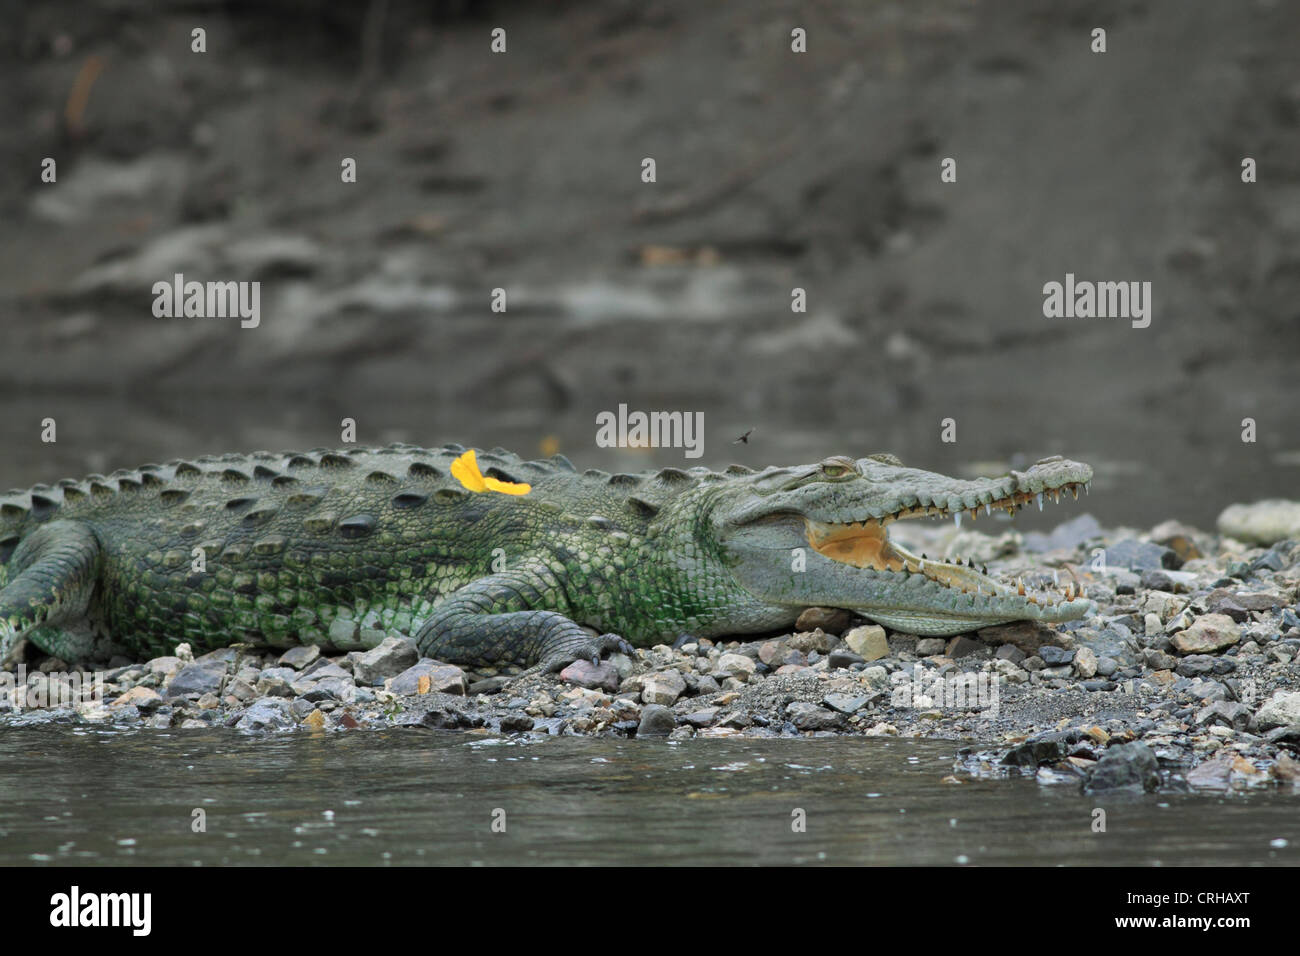 American Crocodile (Crocodylus acutus) gaping to cool body temperature.  River Tempisque, Guanacaste, Costa Rica. Stock Photo